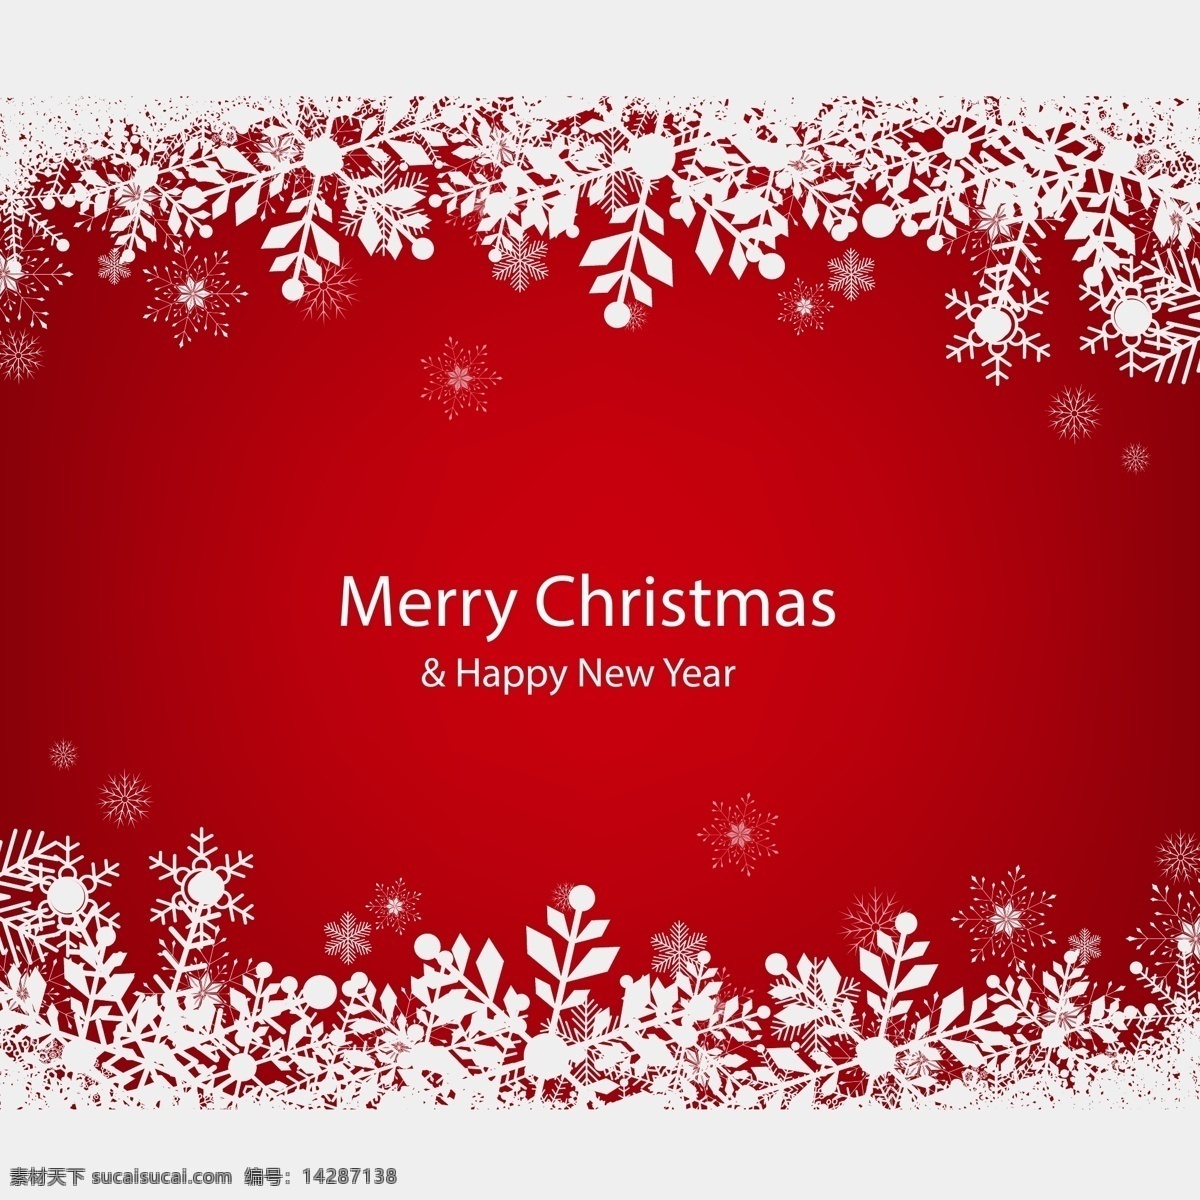 红色 雪花 圣诞 元素 背景 红色背景 圣诞节 节日 卡通 圣诞背景 过节 庆祝 狂欢 西方节日 假期 扁平 矢量